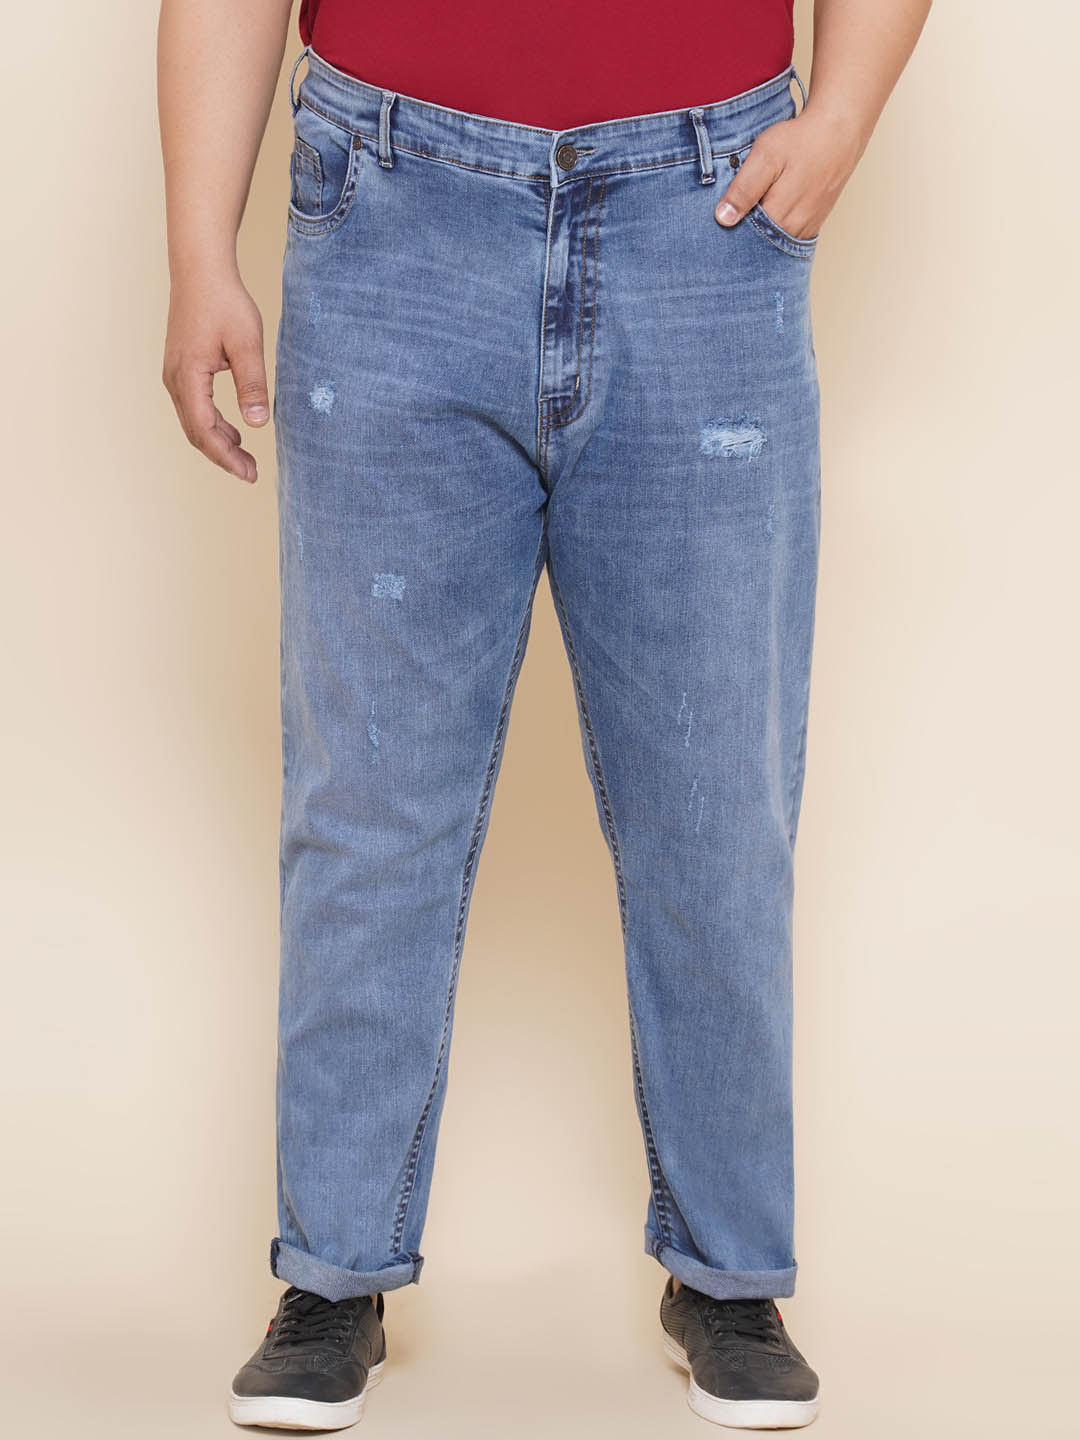 bottomwear/jeans/JPJ12305/jpj12305-1.jpg